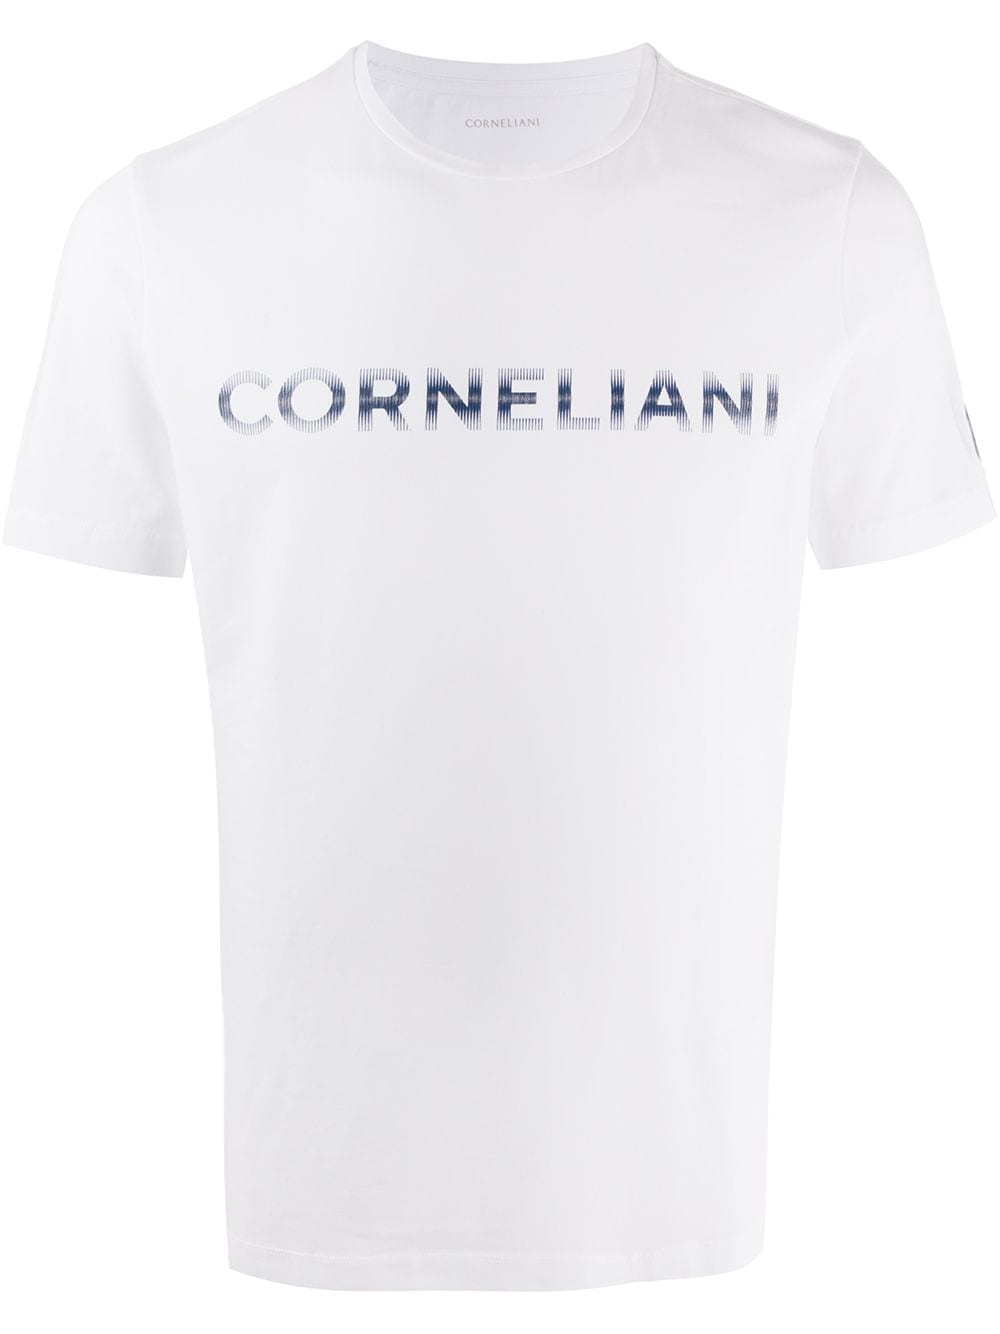 фото Corneliani футболка с короткими рукавами и логотипом